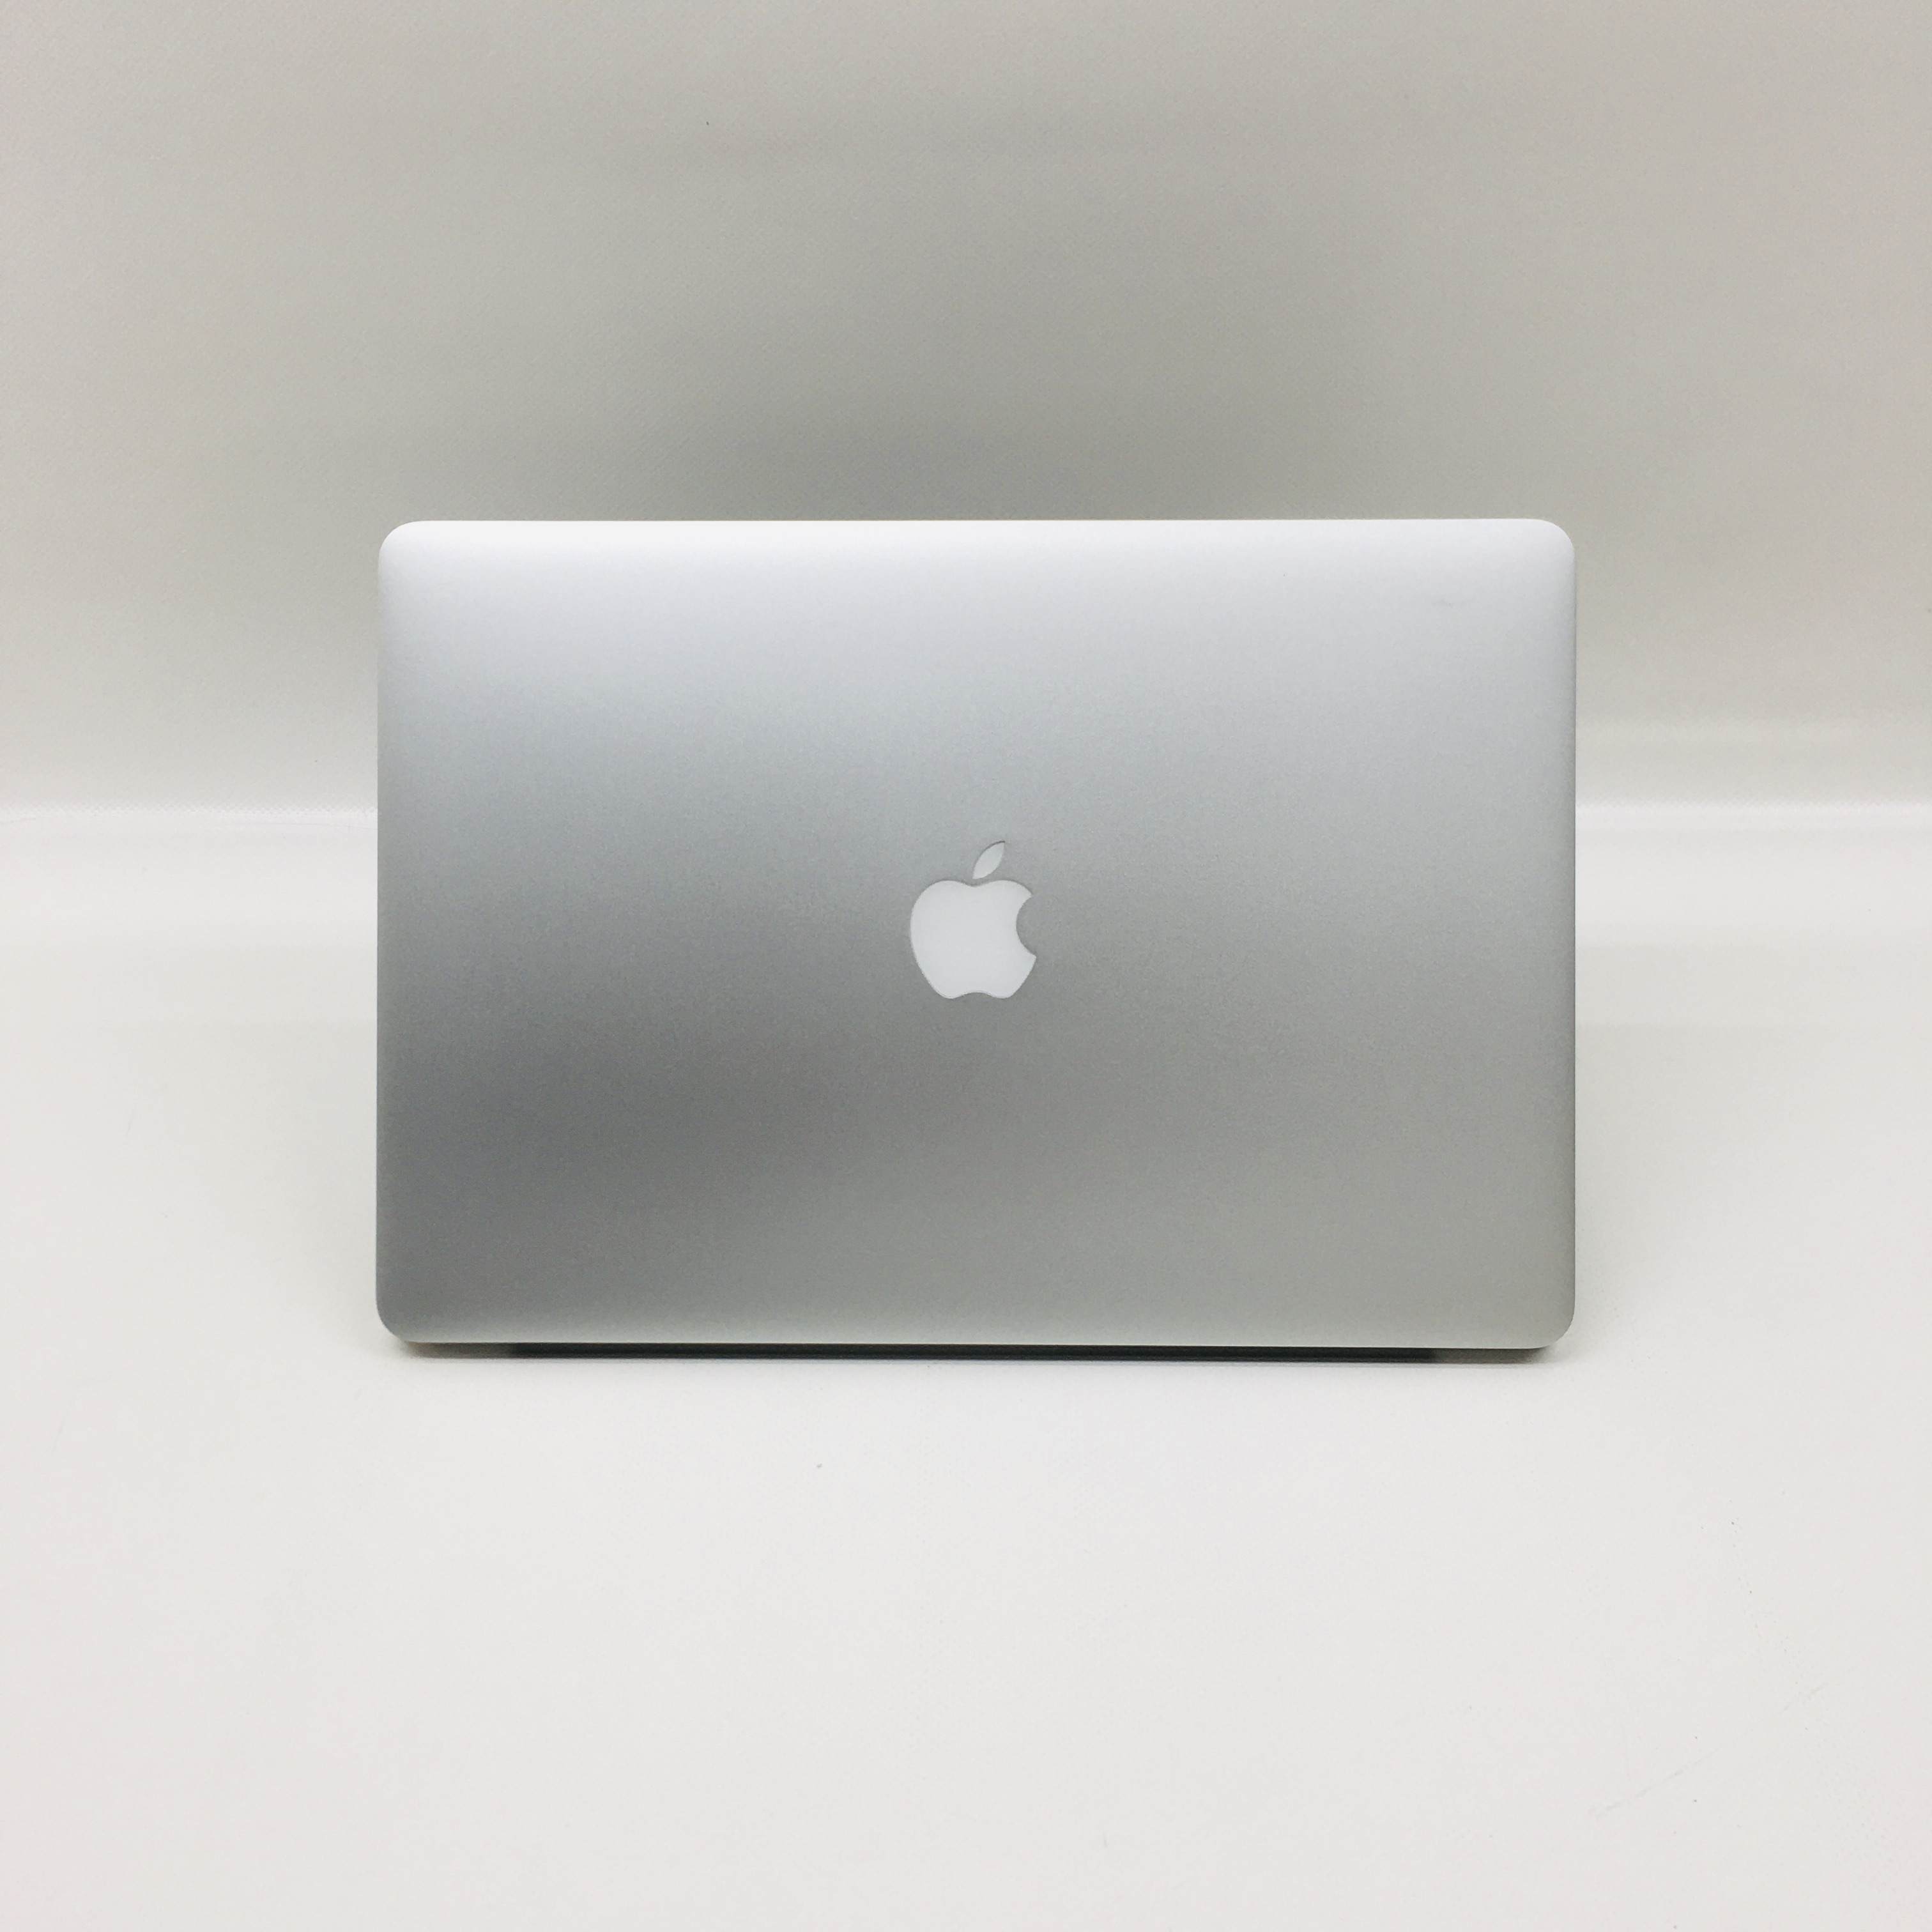 MacBook Pro Retina 15" Mid 2015 (Intel Quad-Core i7 2.5 GHz 16 GB RAM 512 GB SSD), Intel Quad-Core i7 2.5 GHz, 16 GB RAM, 512 GB SSD, image 4